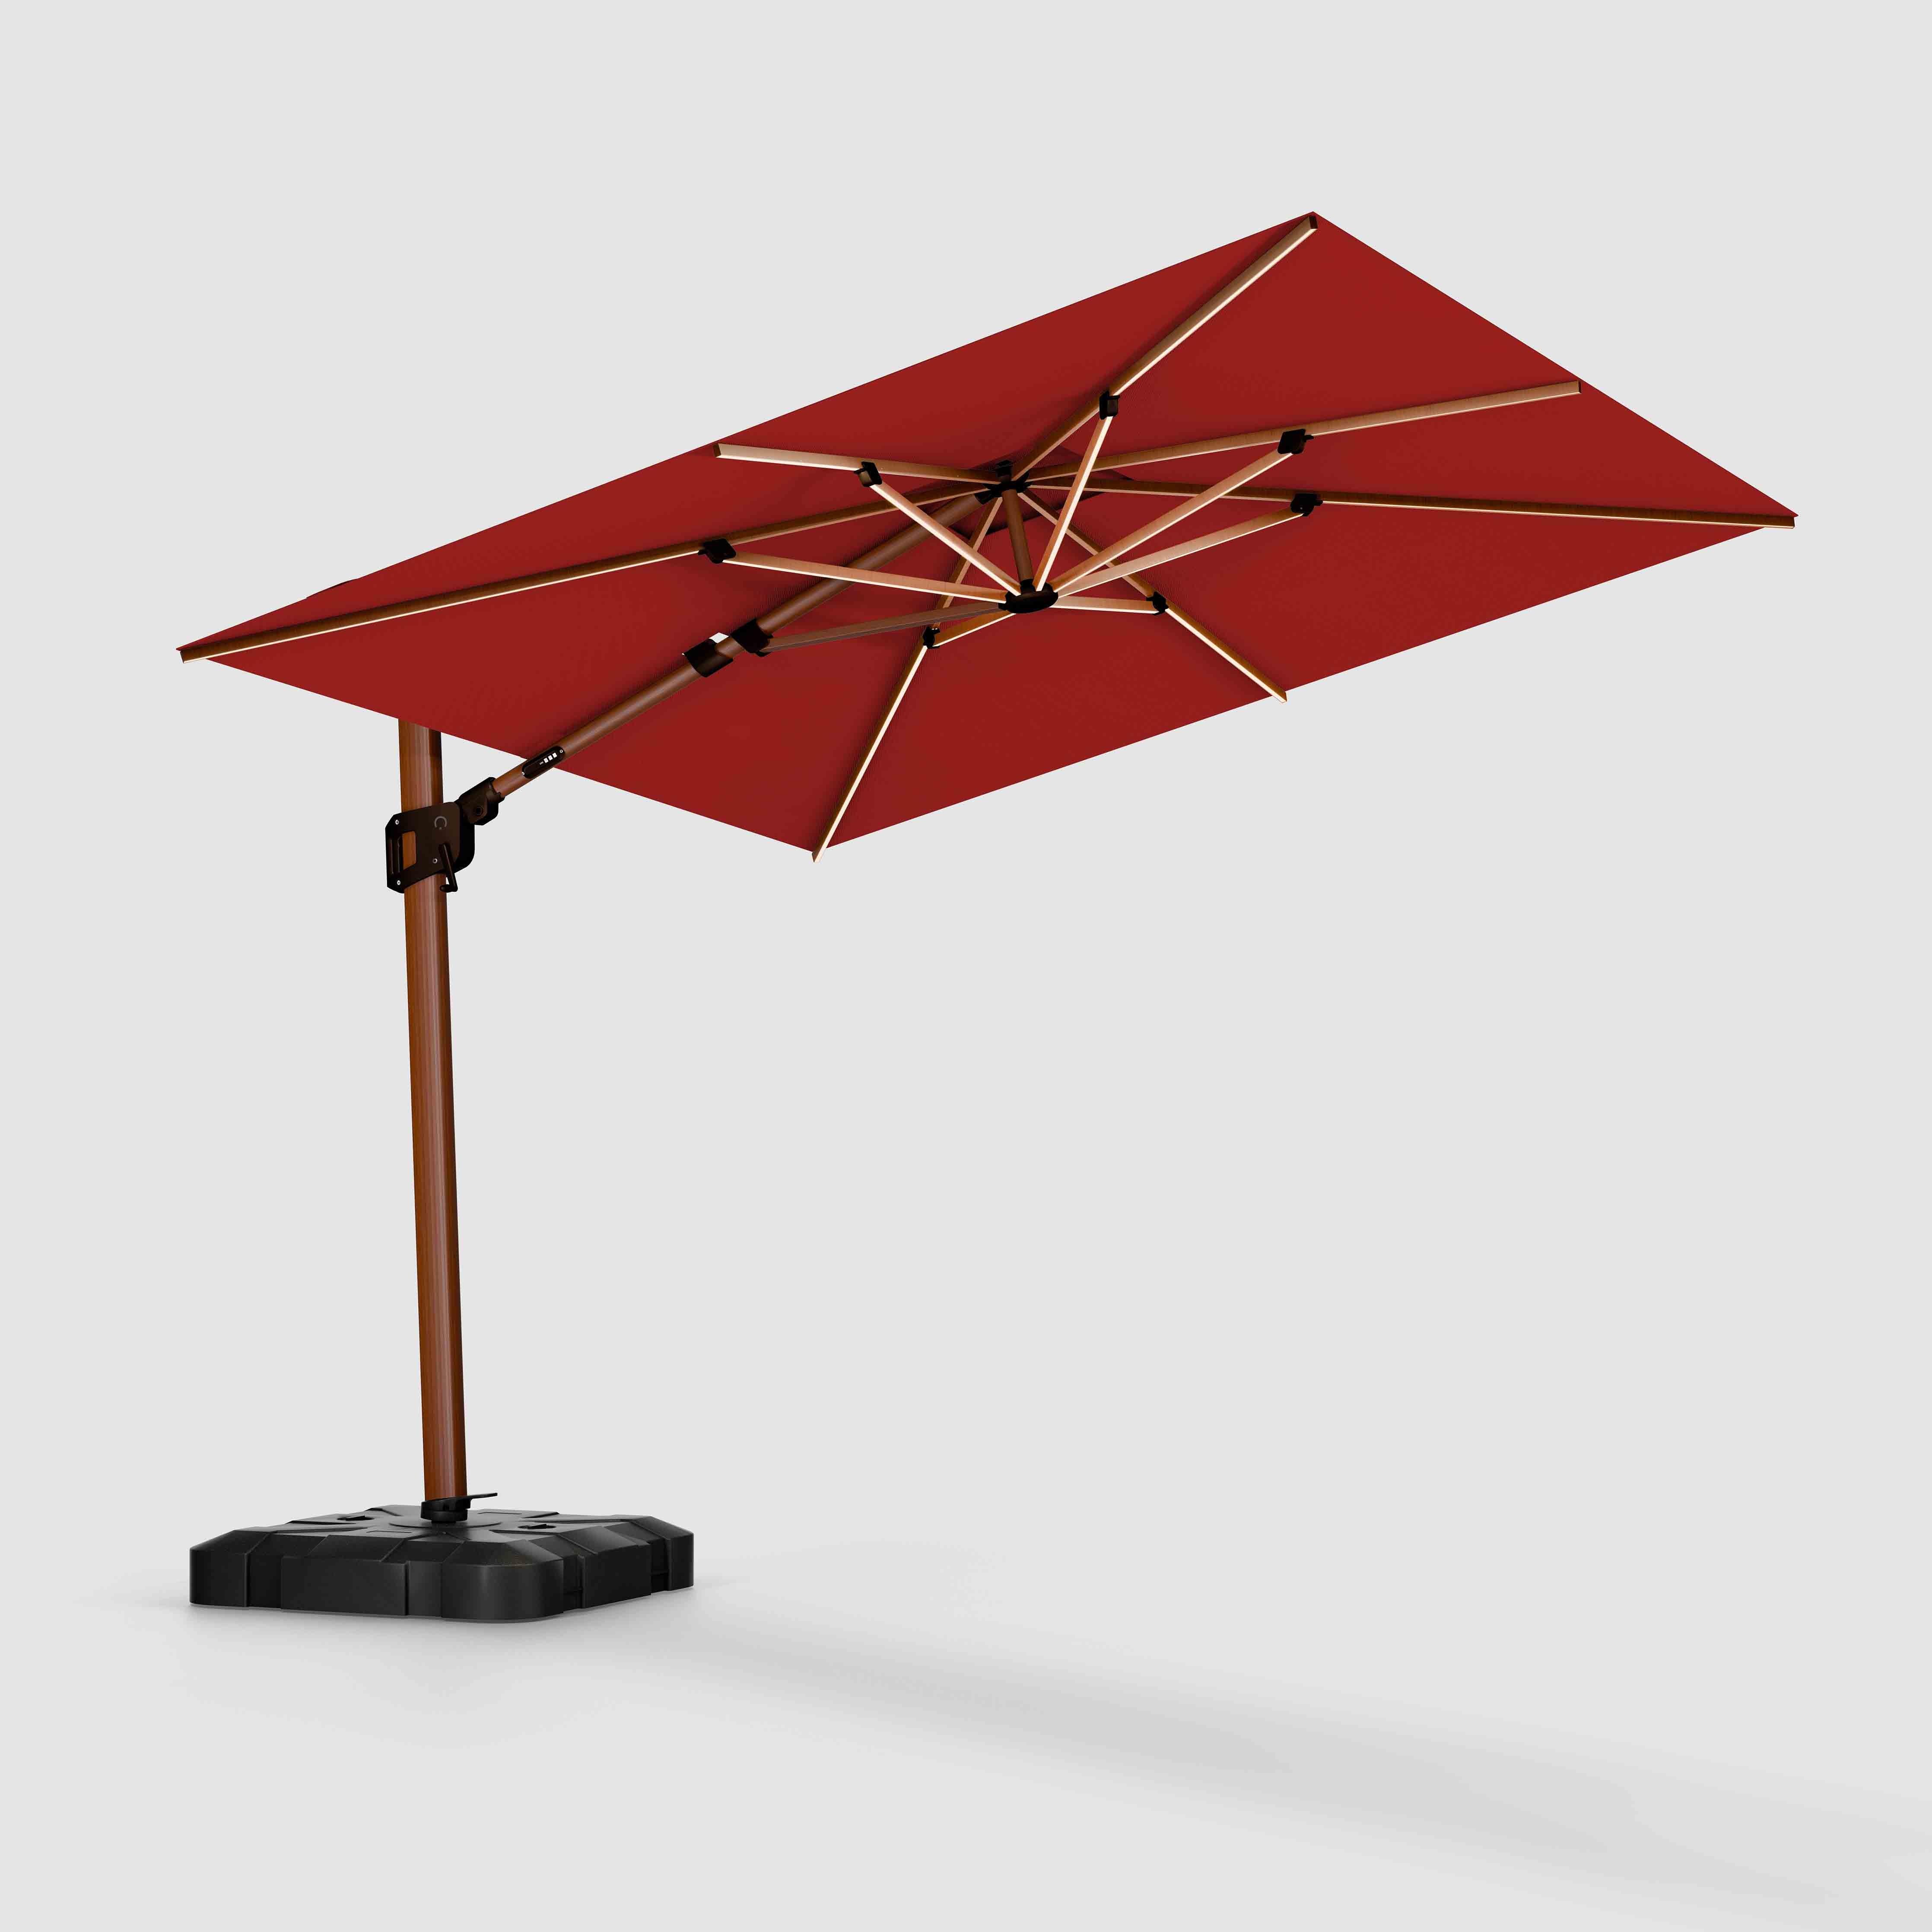 The Supreme Wooden™ - Sunbrella Red